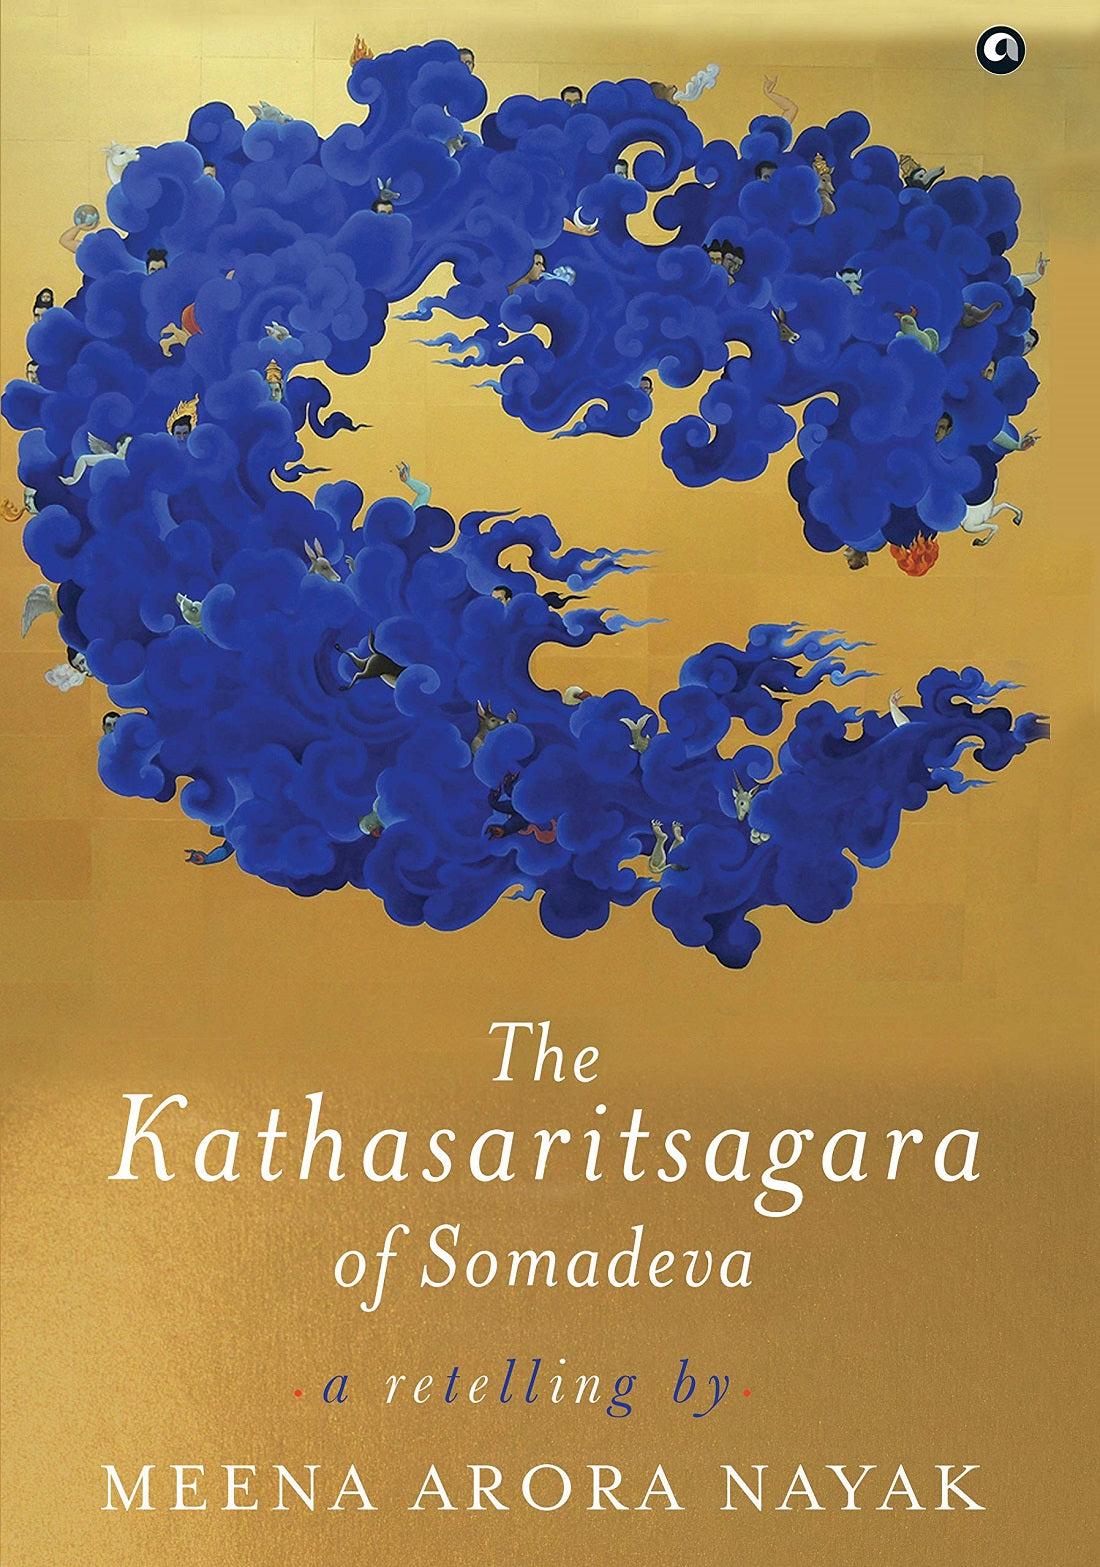 THE KATHASARITSAGARA OF SOMADEVA: A RETELLING